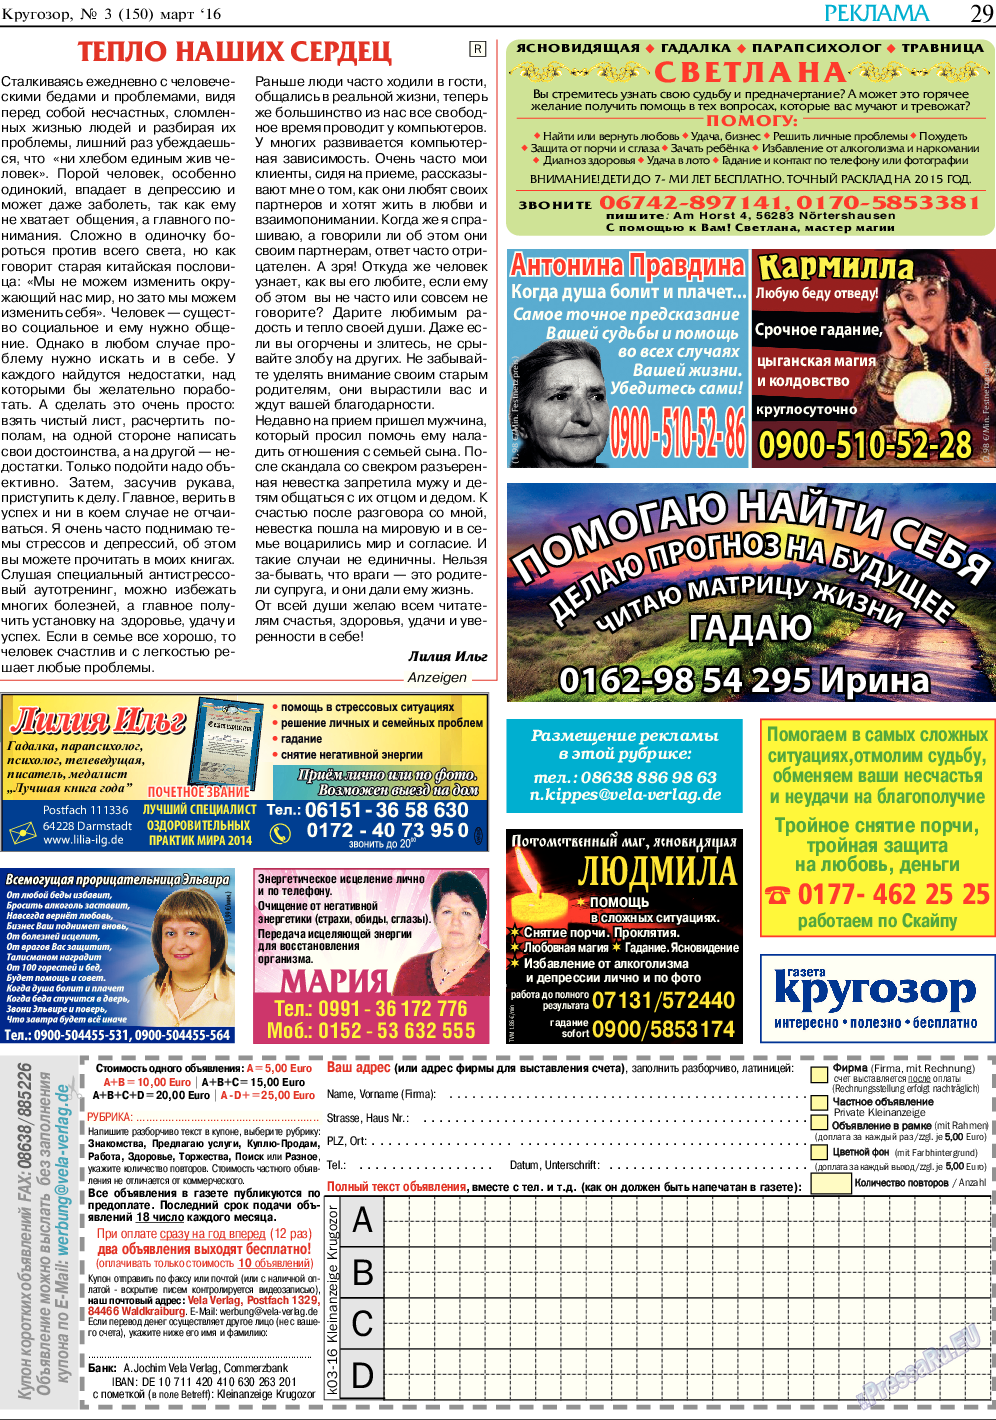 Кругозор, газета. 2016 №3 стр.29